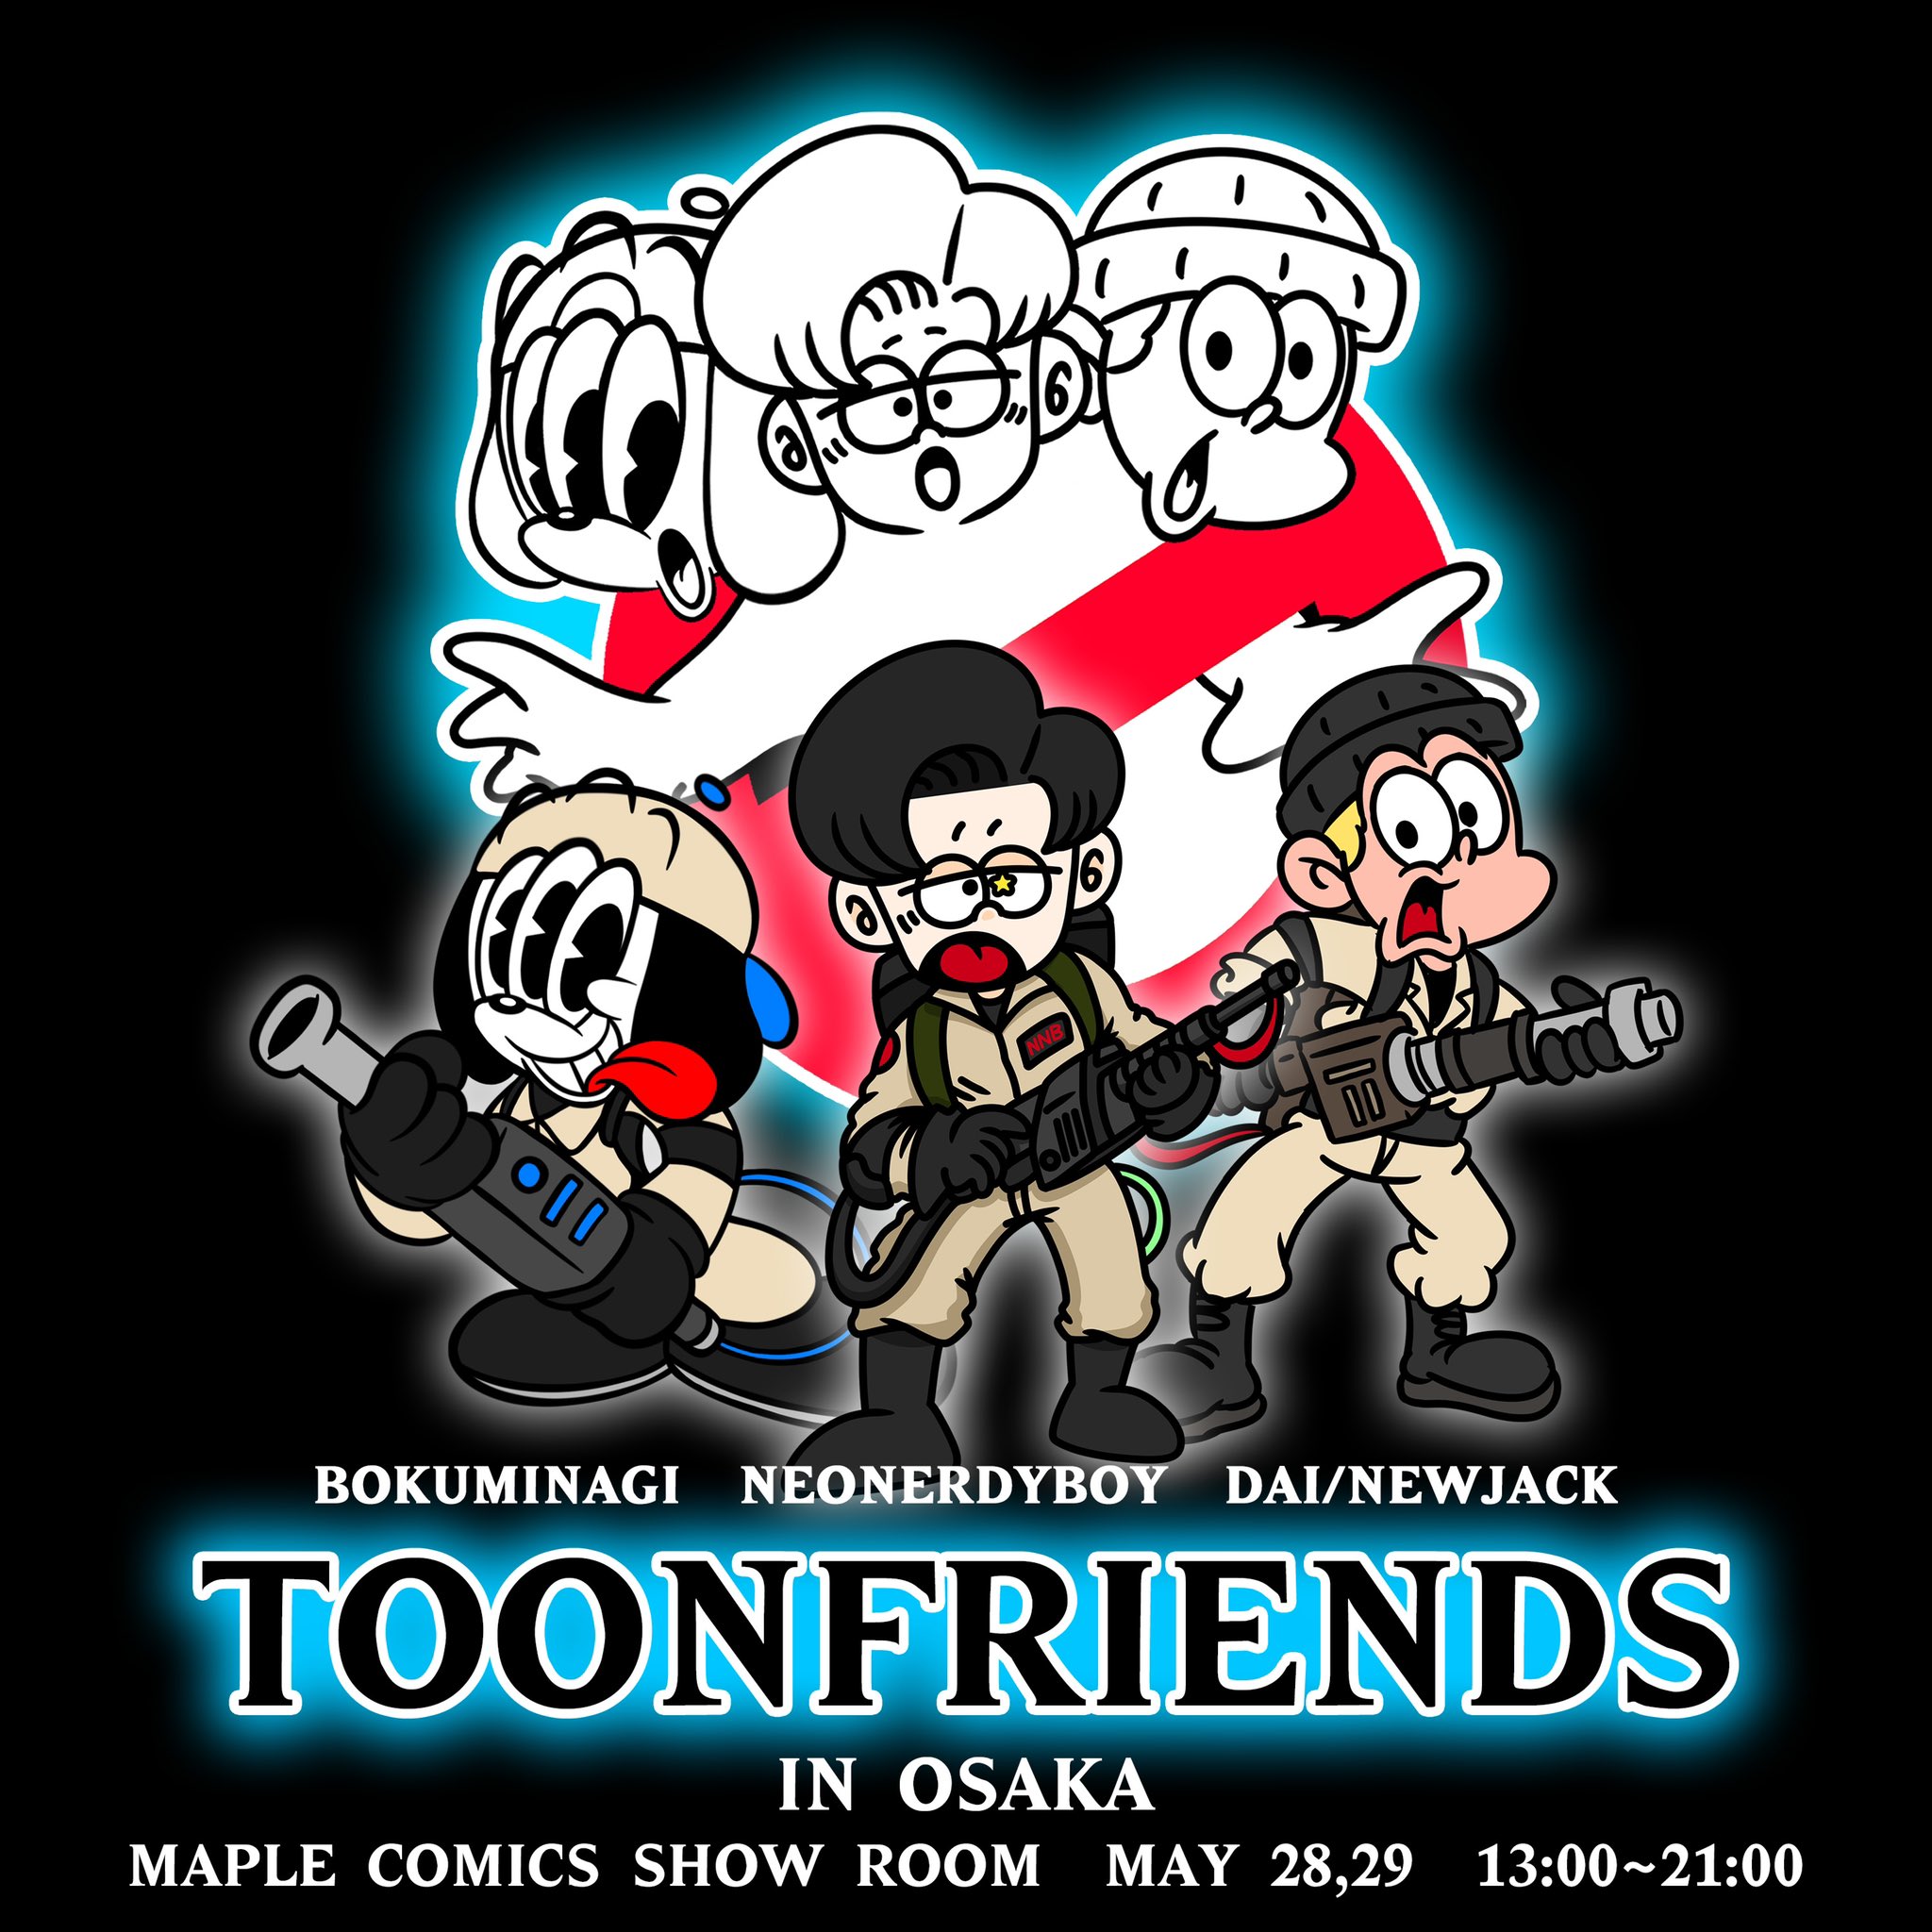 𝙣𝙚𝙤𝙣𝙚𝙧𝙙𝙮𝙗𝙤𝙮 Toonfriends開催決定 Osaka 5 28 5 29 Maple Comics Show Room What S Toonfriends 海外 のカルチャーから強くインスピレーションを受けたイラストで Snsで話題沸騰中の若手イラストレーターたちが集結 彼らが